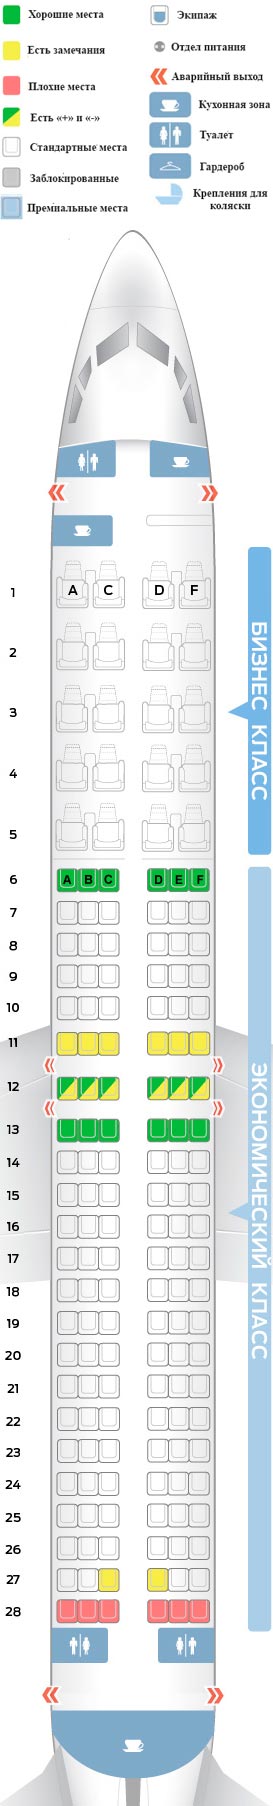 Расположение мест в самолете Боинг 737-800 Аэрофлот схема салона